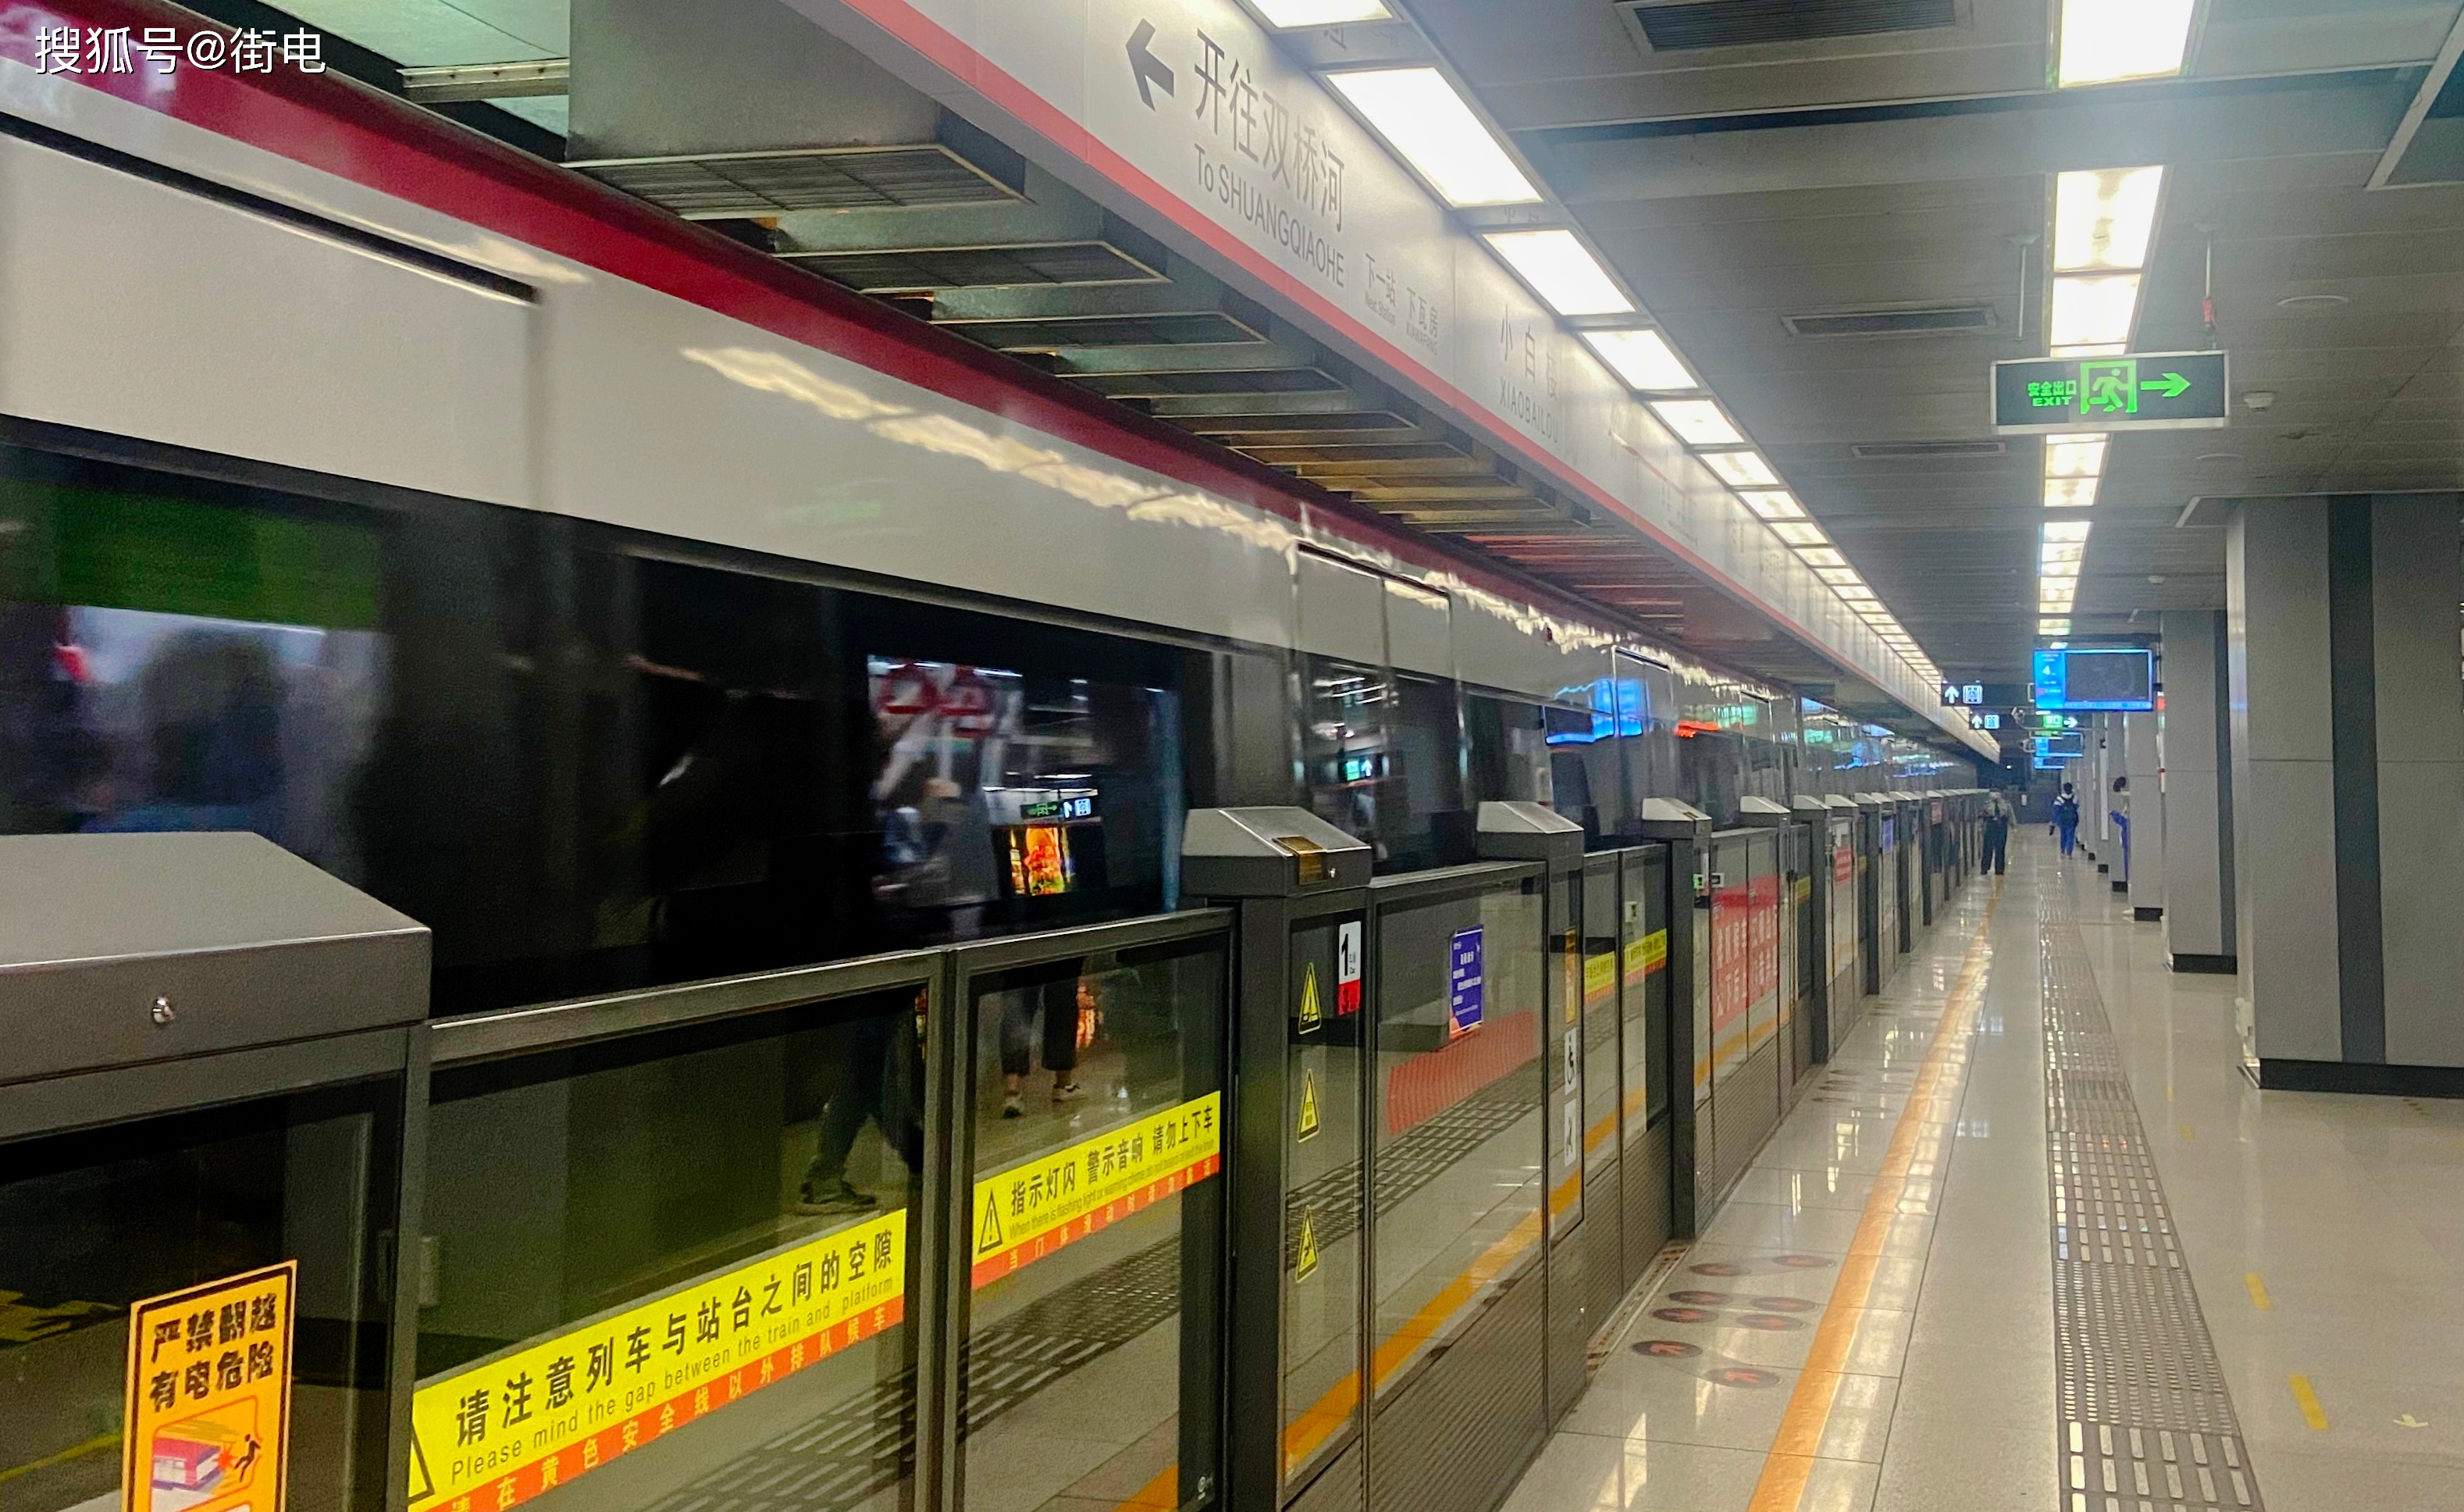 街电独家入驻天津地铁1号线百余台设备提供全天候便民服务